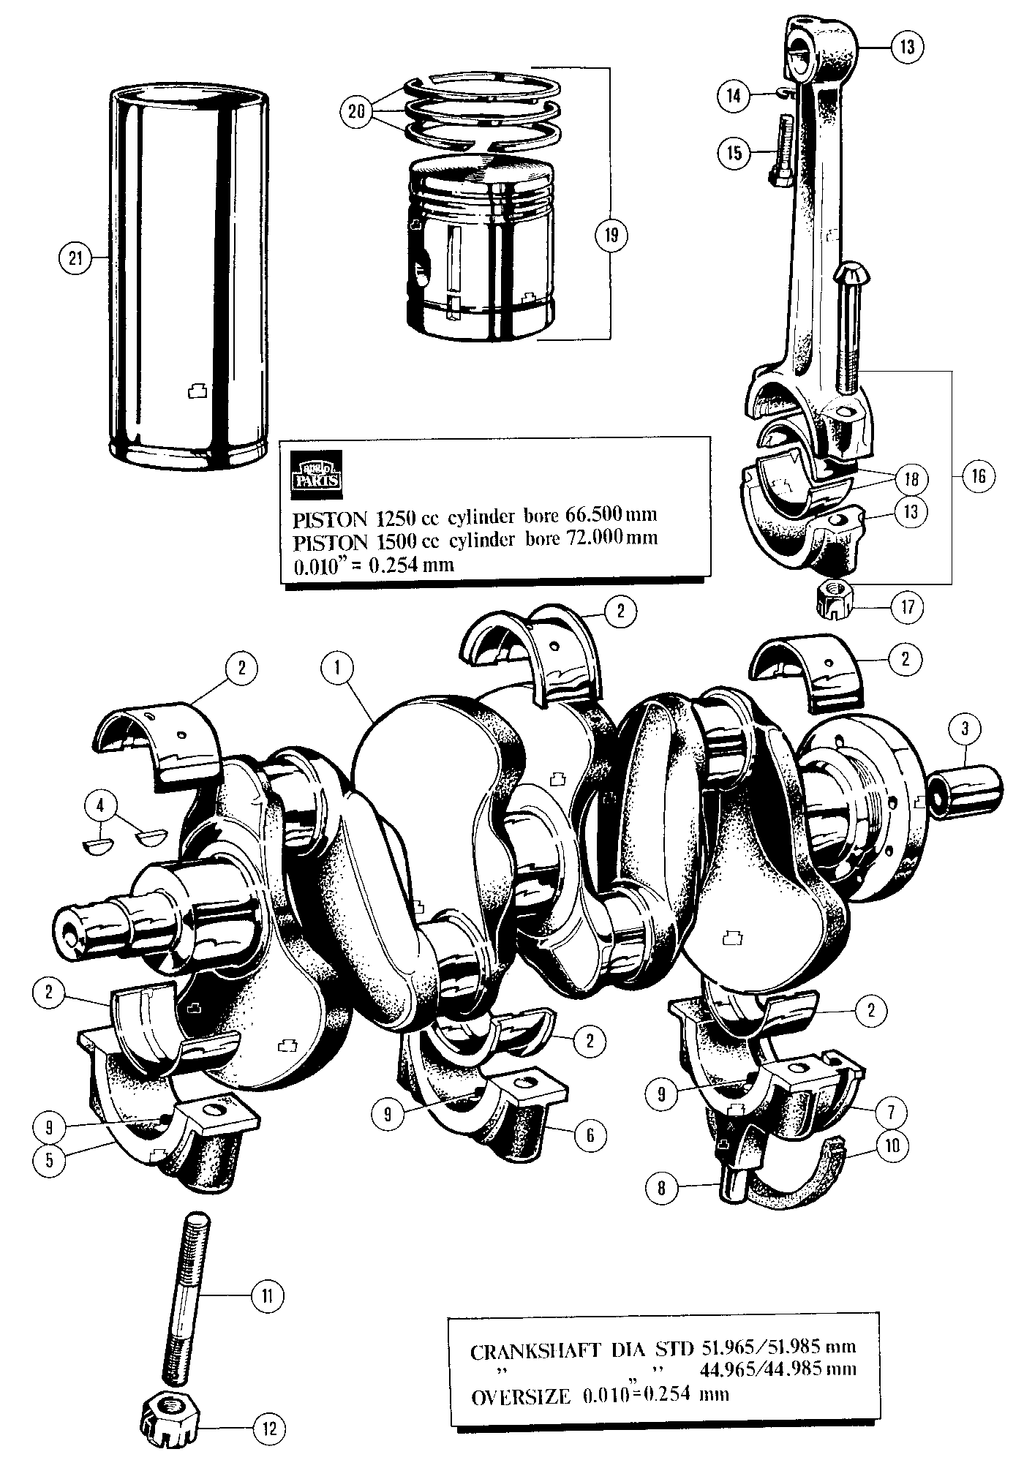 MGTD-TF 1949-1955 - Crankshafts | Webshop Anglo Parts - Crankshaft & pistons - 1